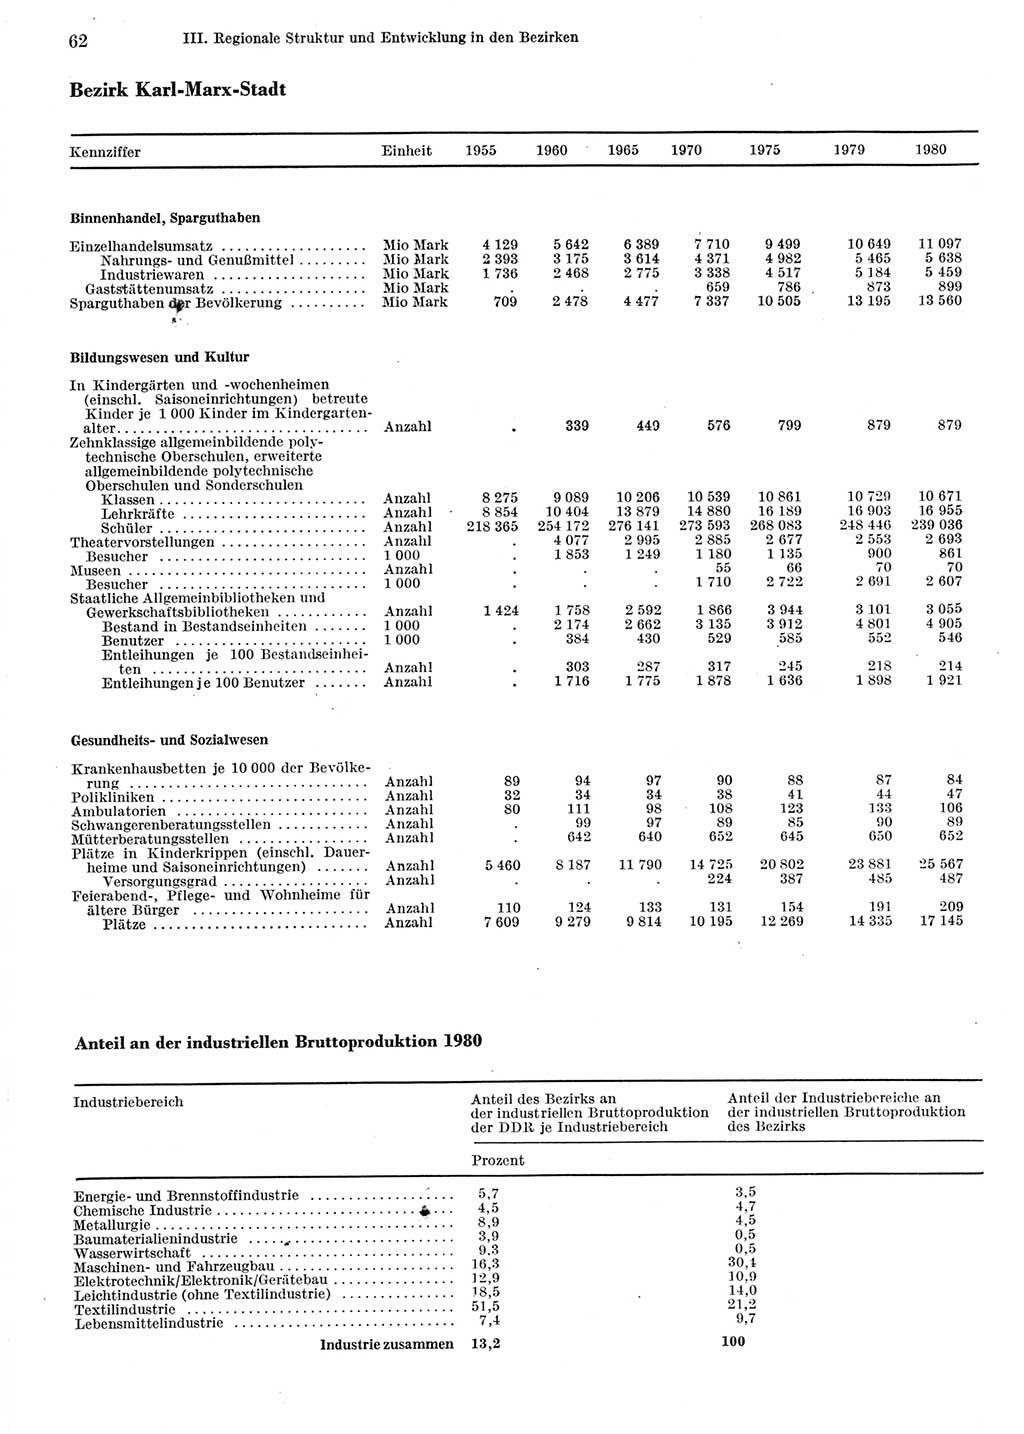 Statistisches Jahrbuch der Deutschen Demokratischen Republik (DDR) 1981, Seite 62 (Stat. Jb. DDR 1981, S. 62)